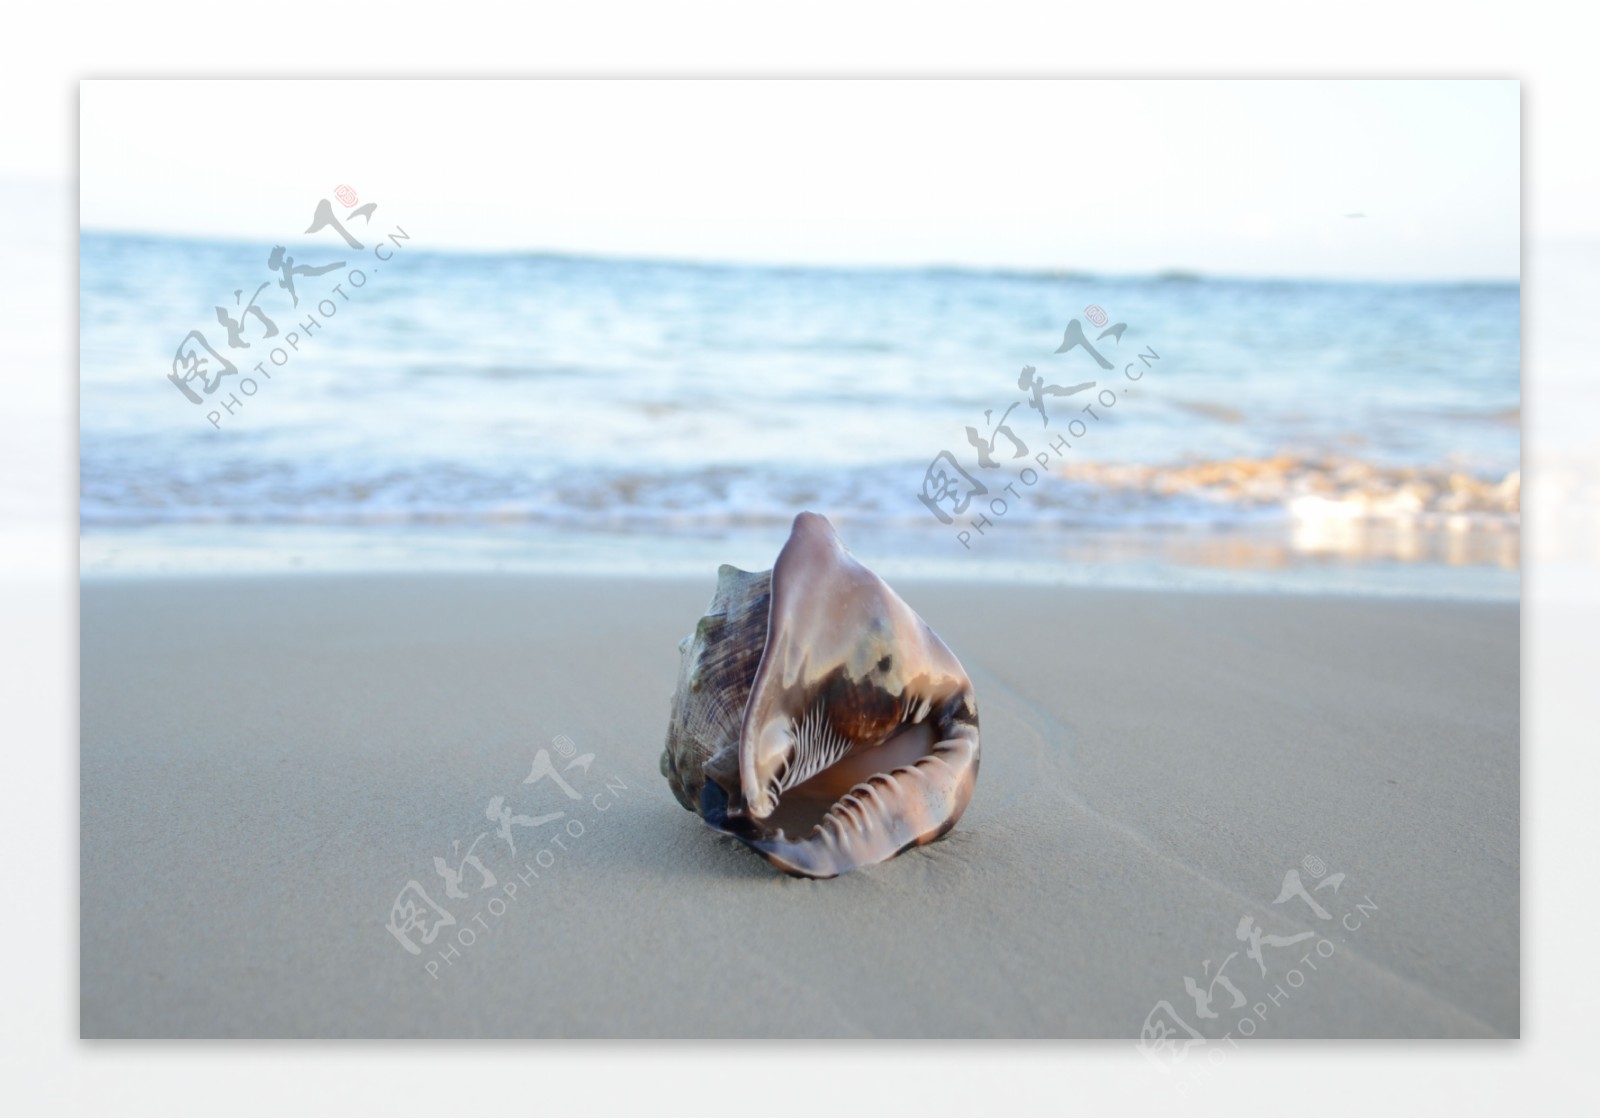 唯美沙滩上的海螺图片